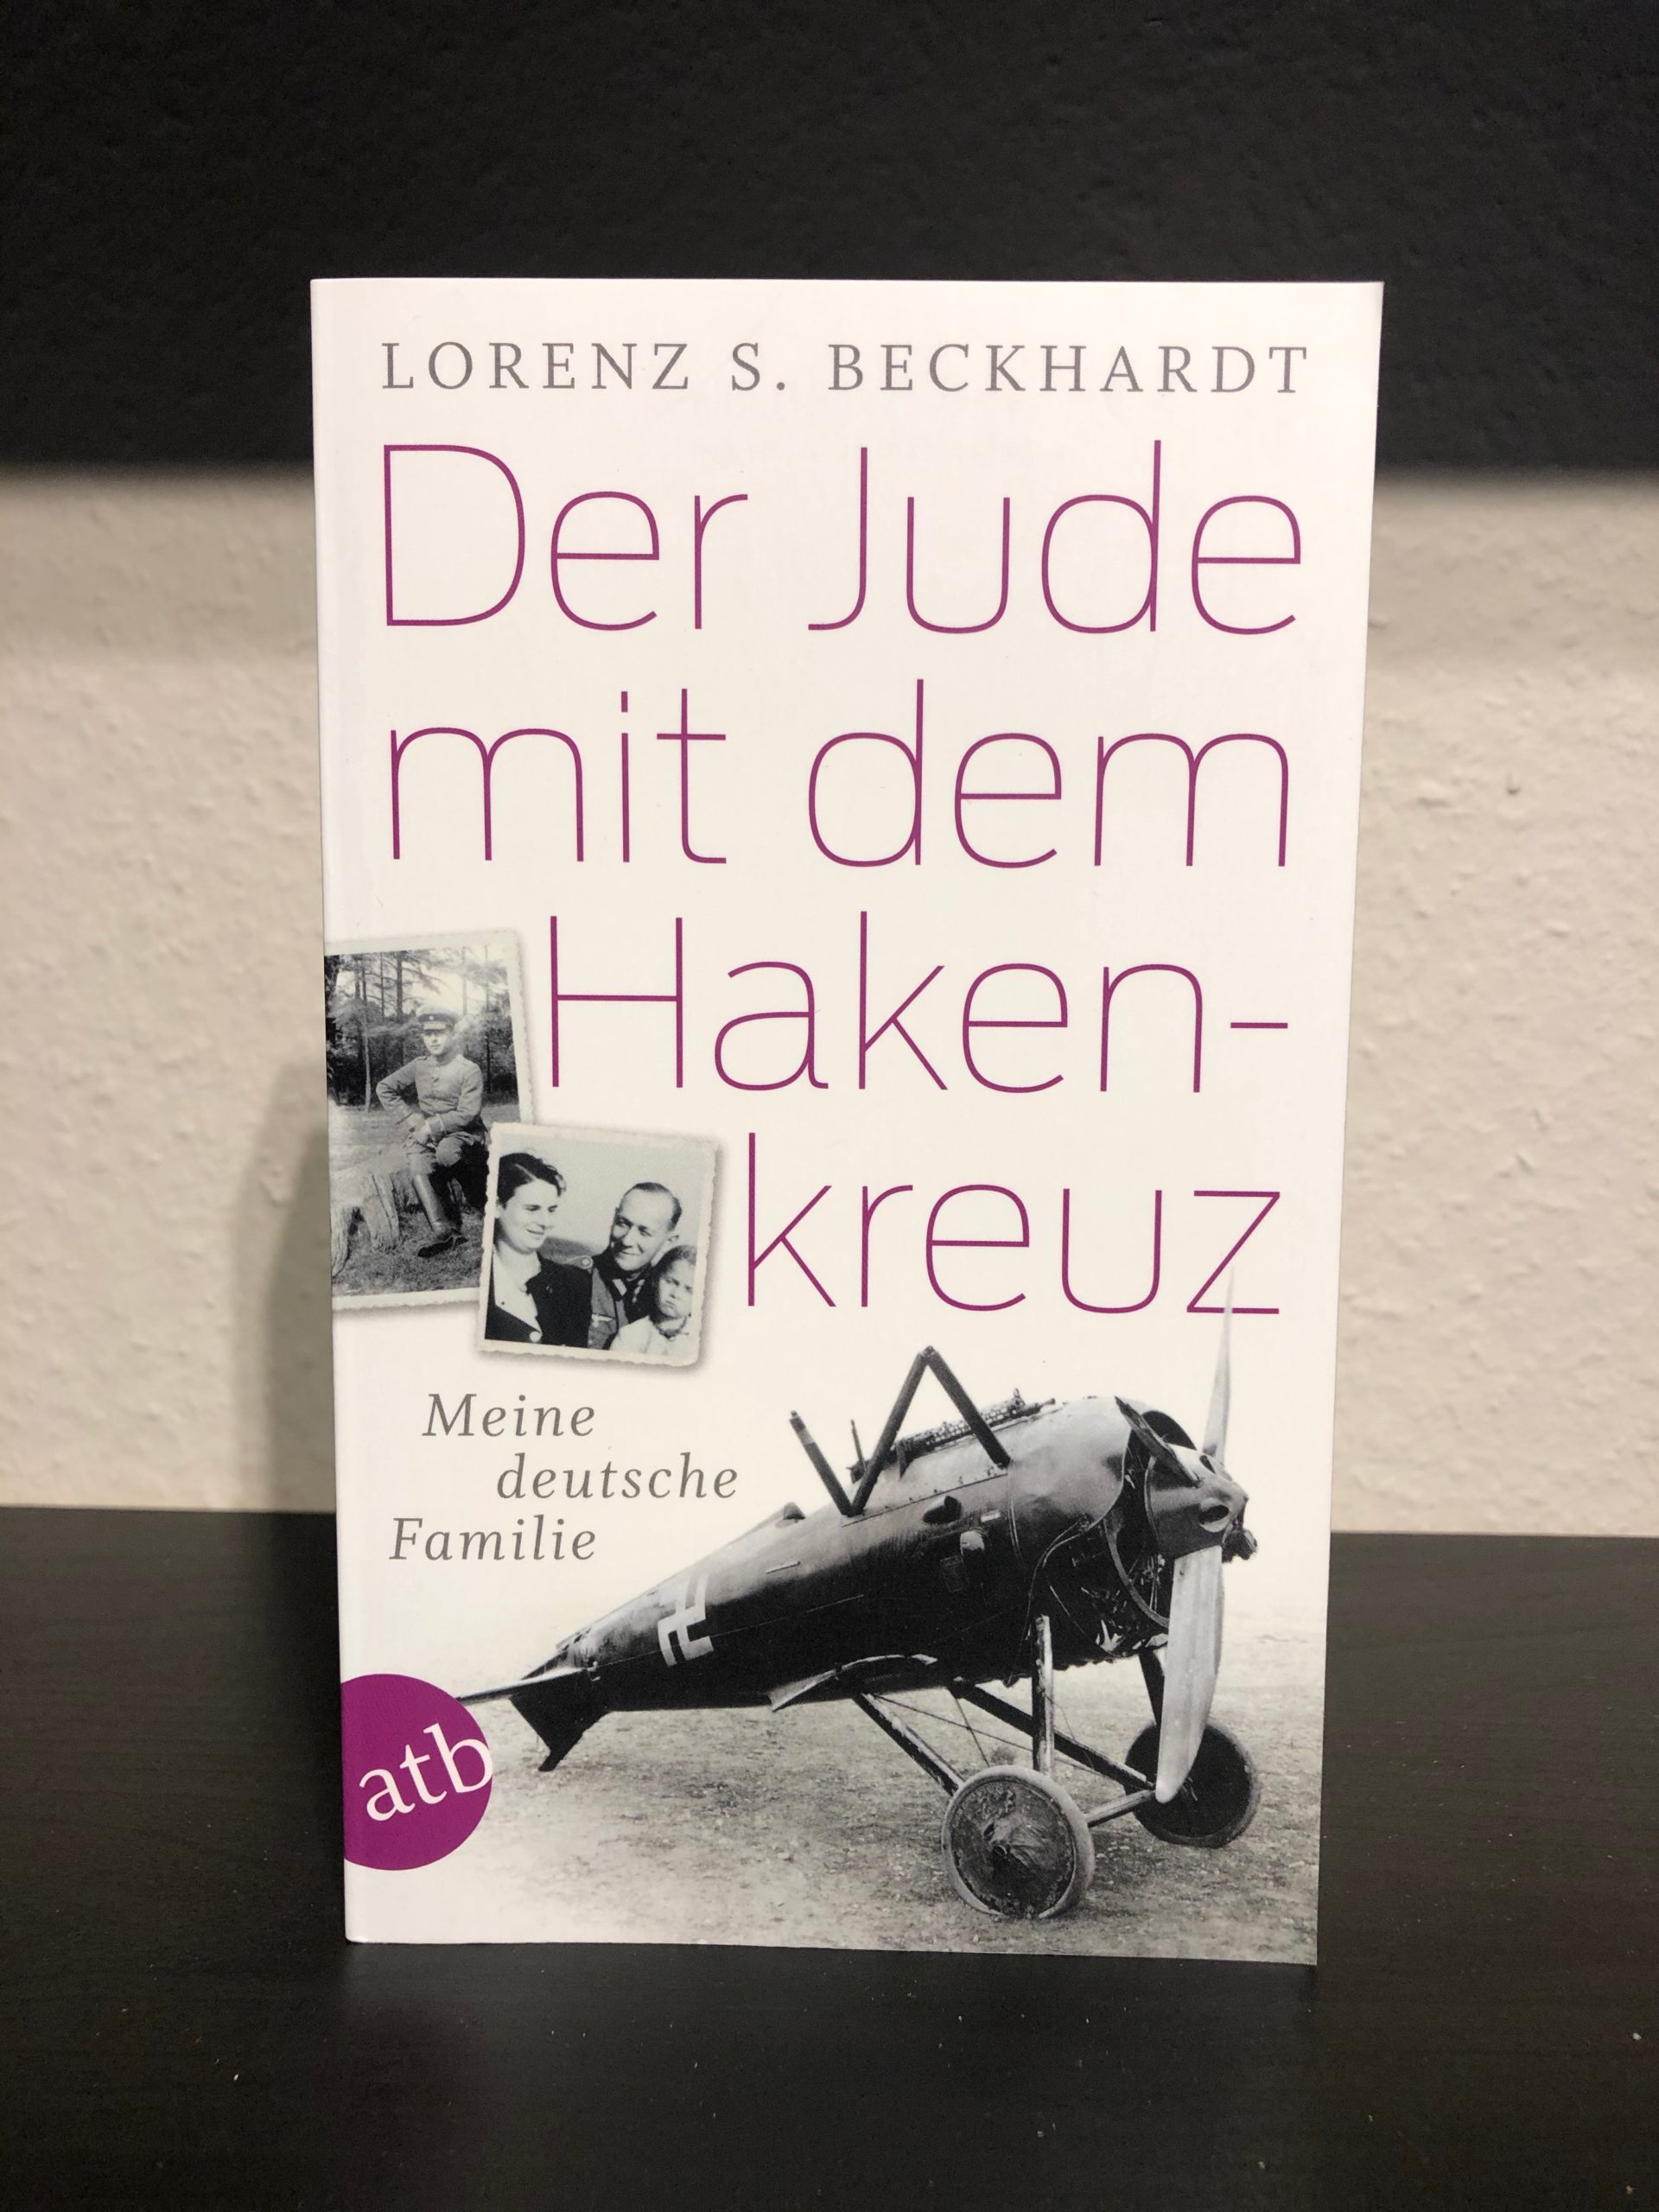 Der Jude mit dem Hakenkreuz - Meine deutsche Familie - Lorenz S. Beckhardt